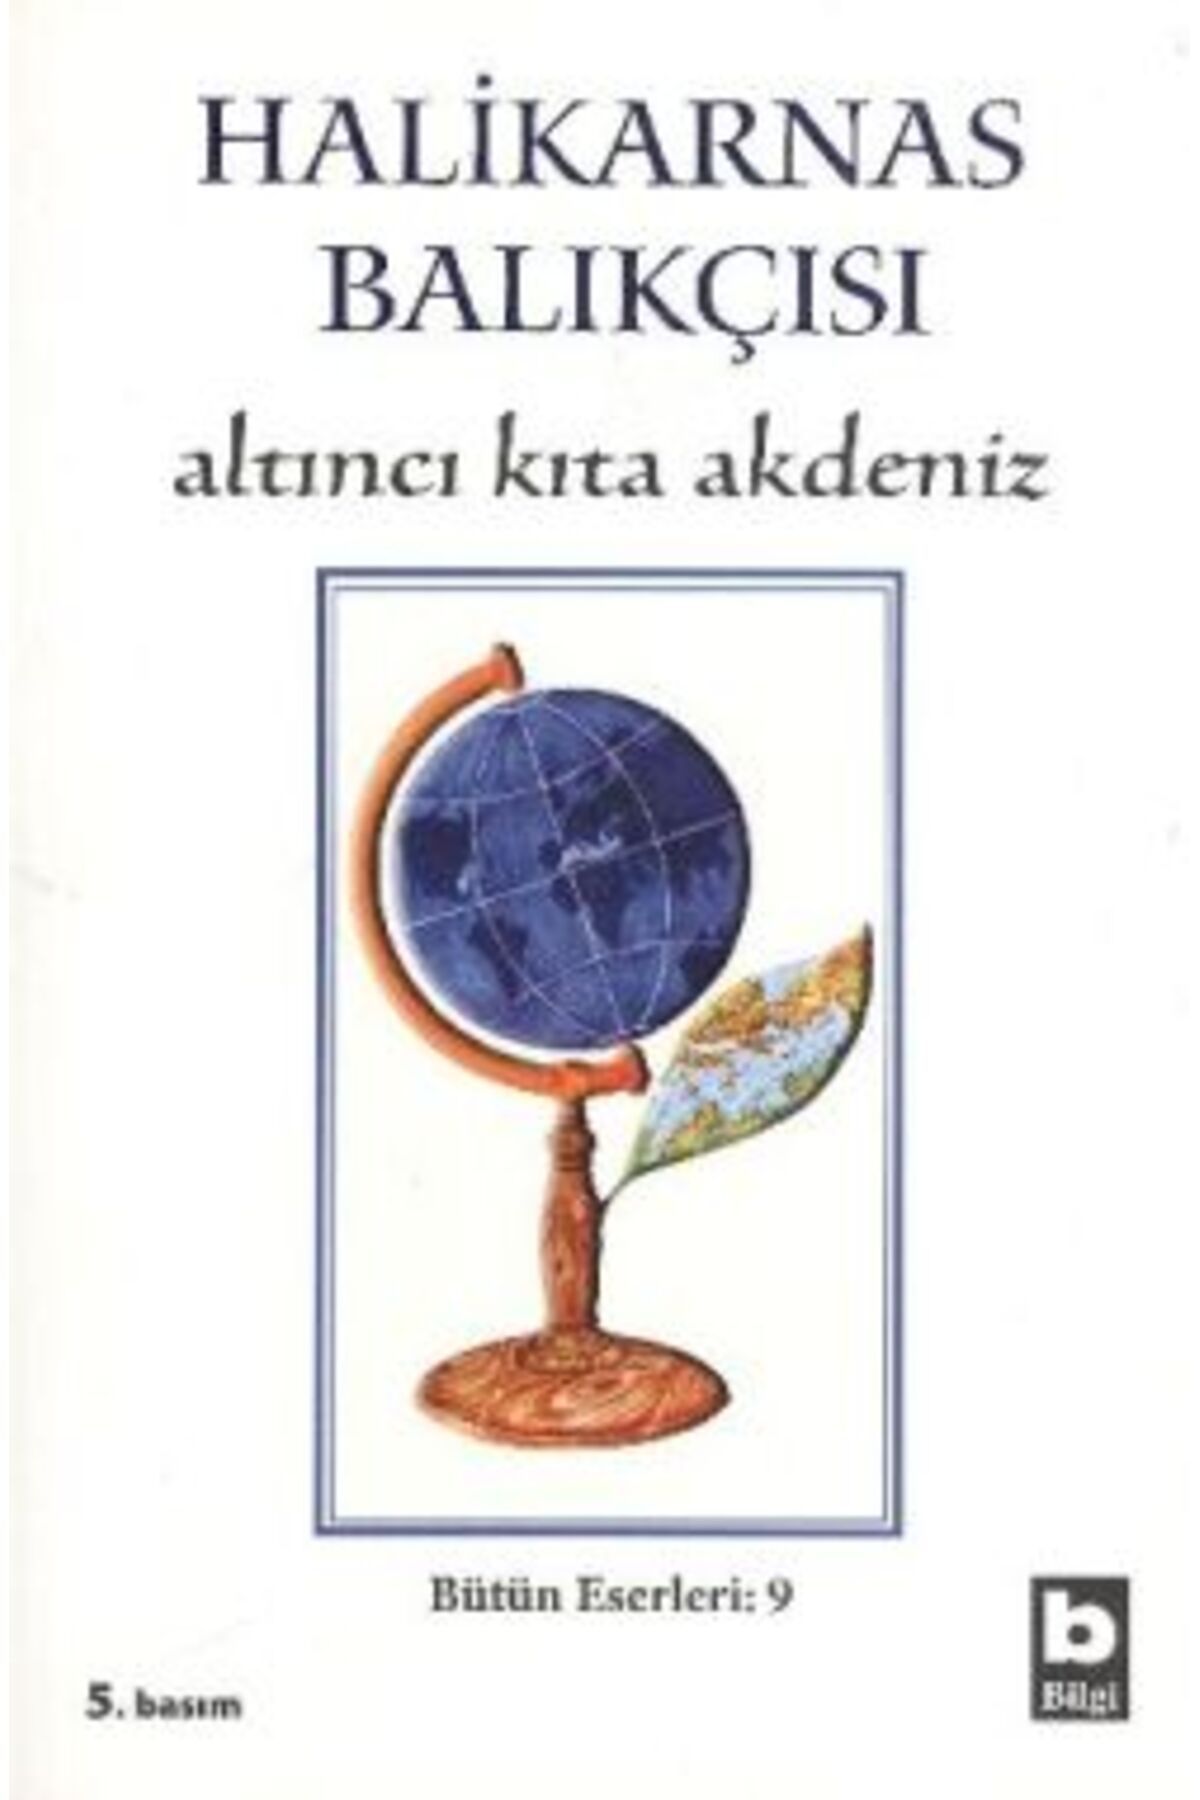 Bilgi Yayınları Halikarnas Balıkçısı - Altıncı Kıta Akdeniz Bütün Eserleri 9 kitabı - Cevat Şakir Kabaağaçlı (Halika